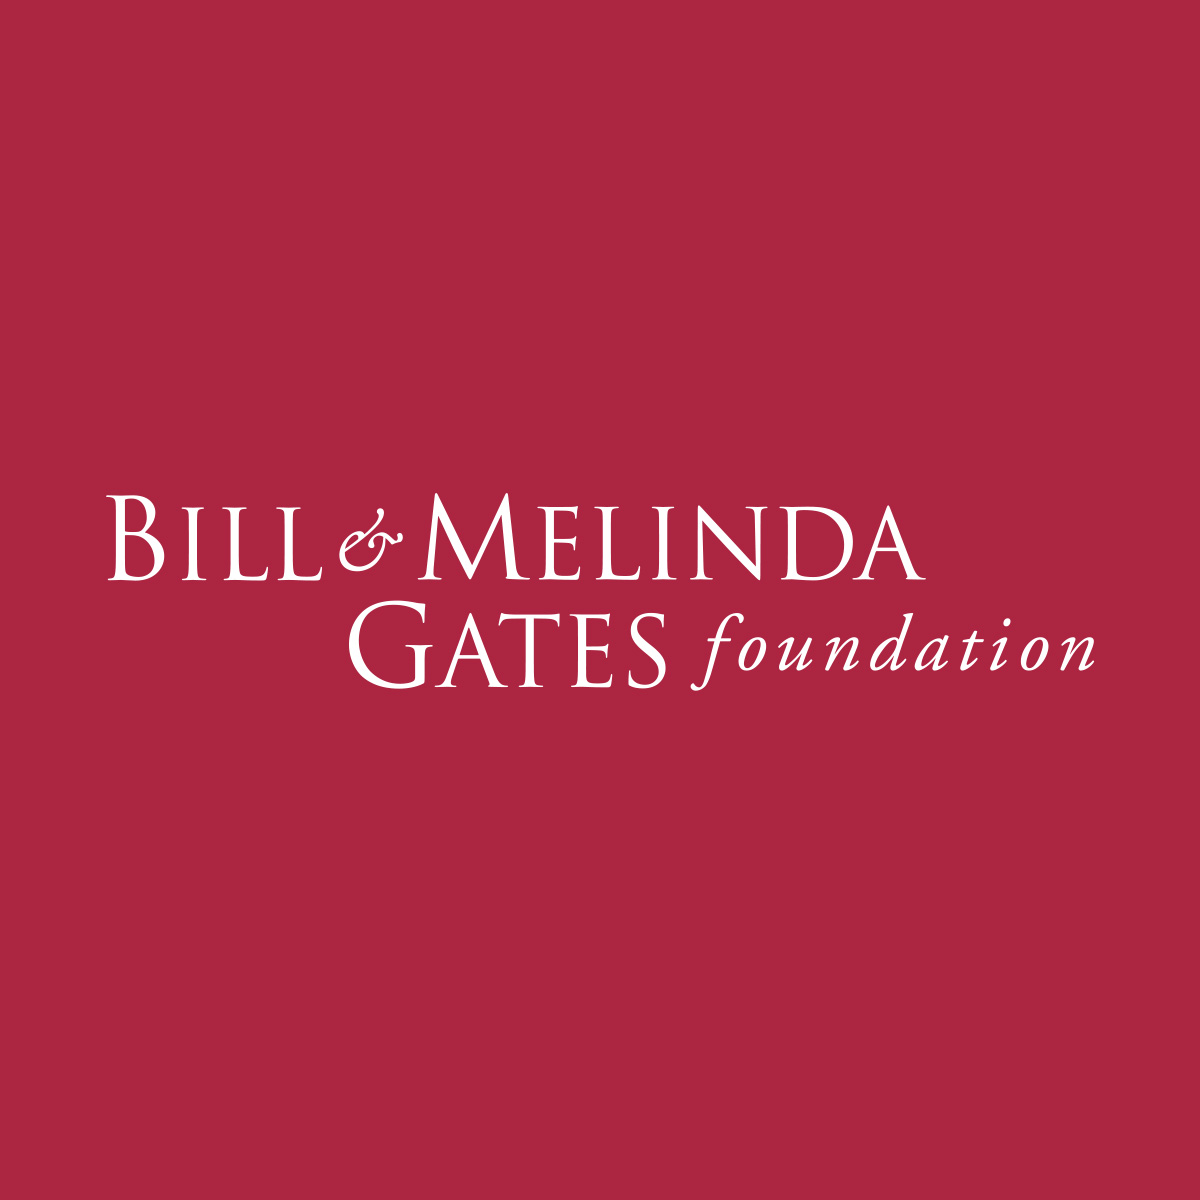 盖茨<font color="red">基金会</font>支持抗艾滋病毒和疟疾研究